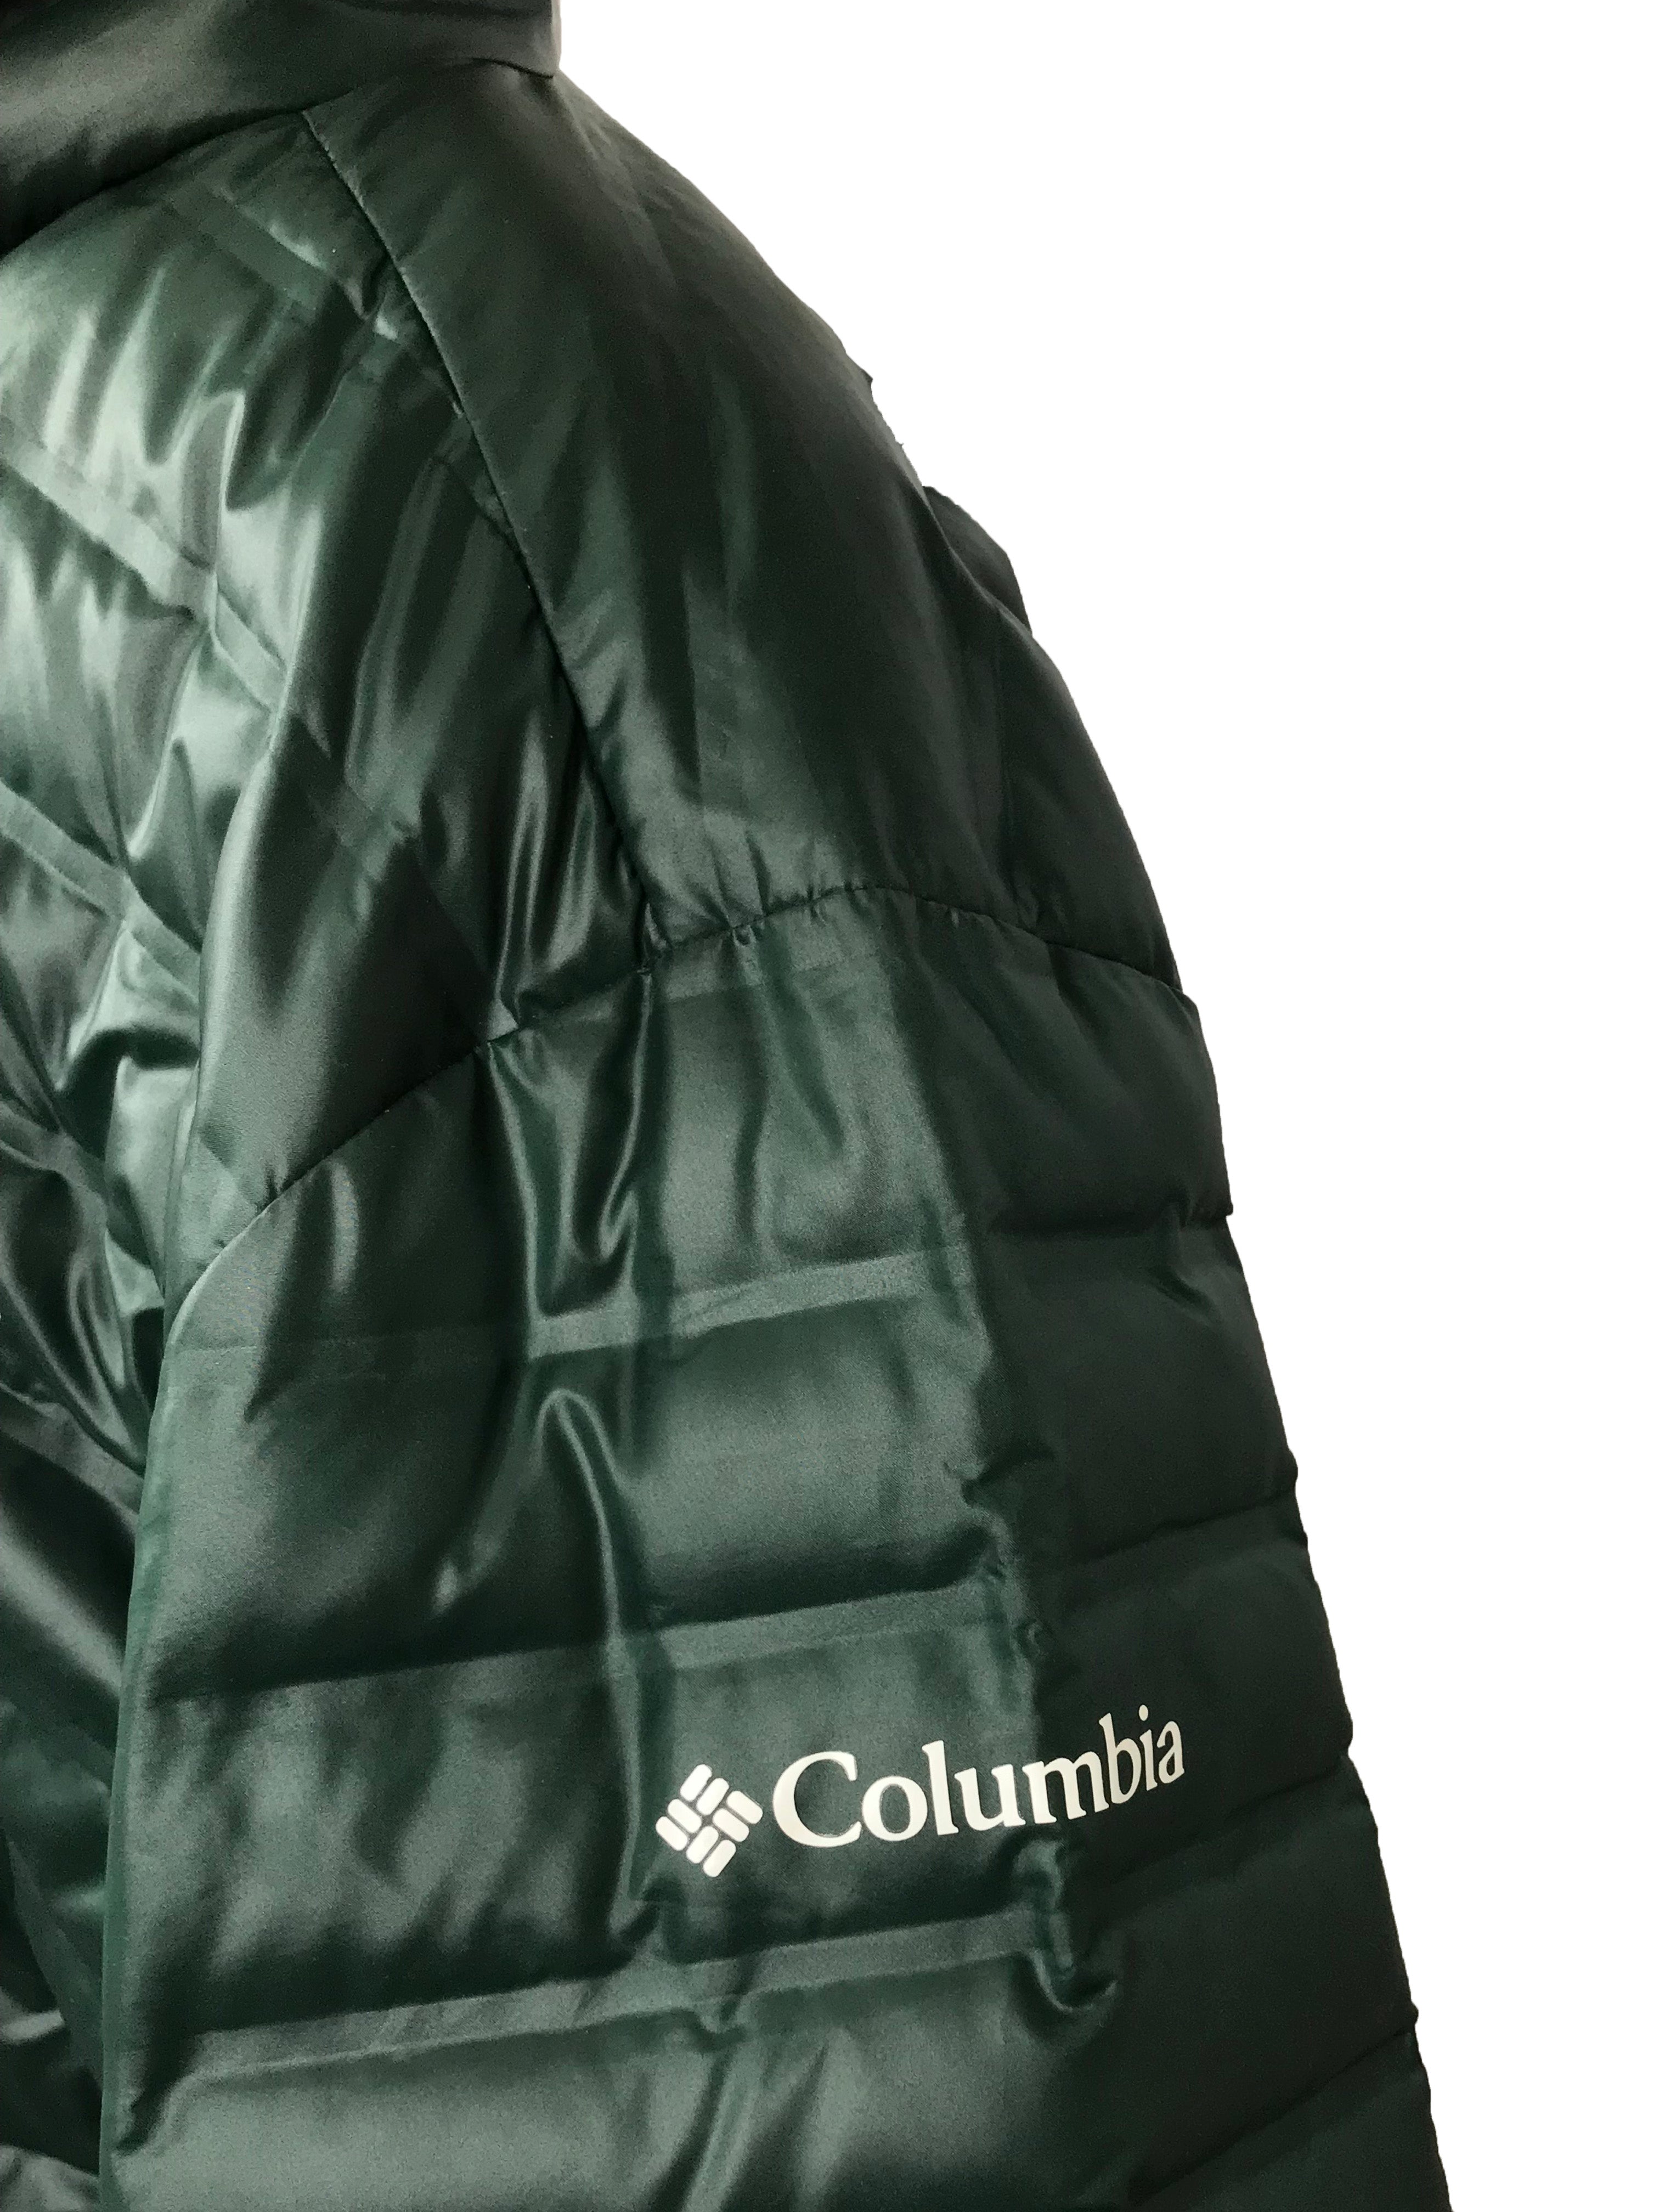 Columbia Green Michigan State University Puffer Jacket Unisex Size L